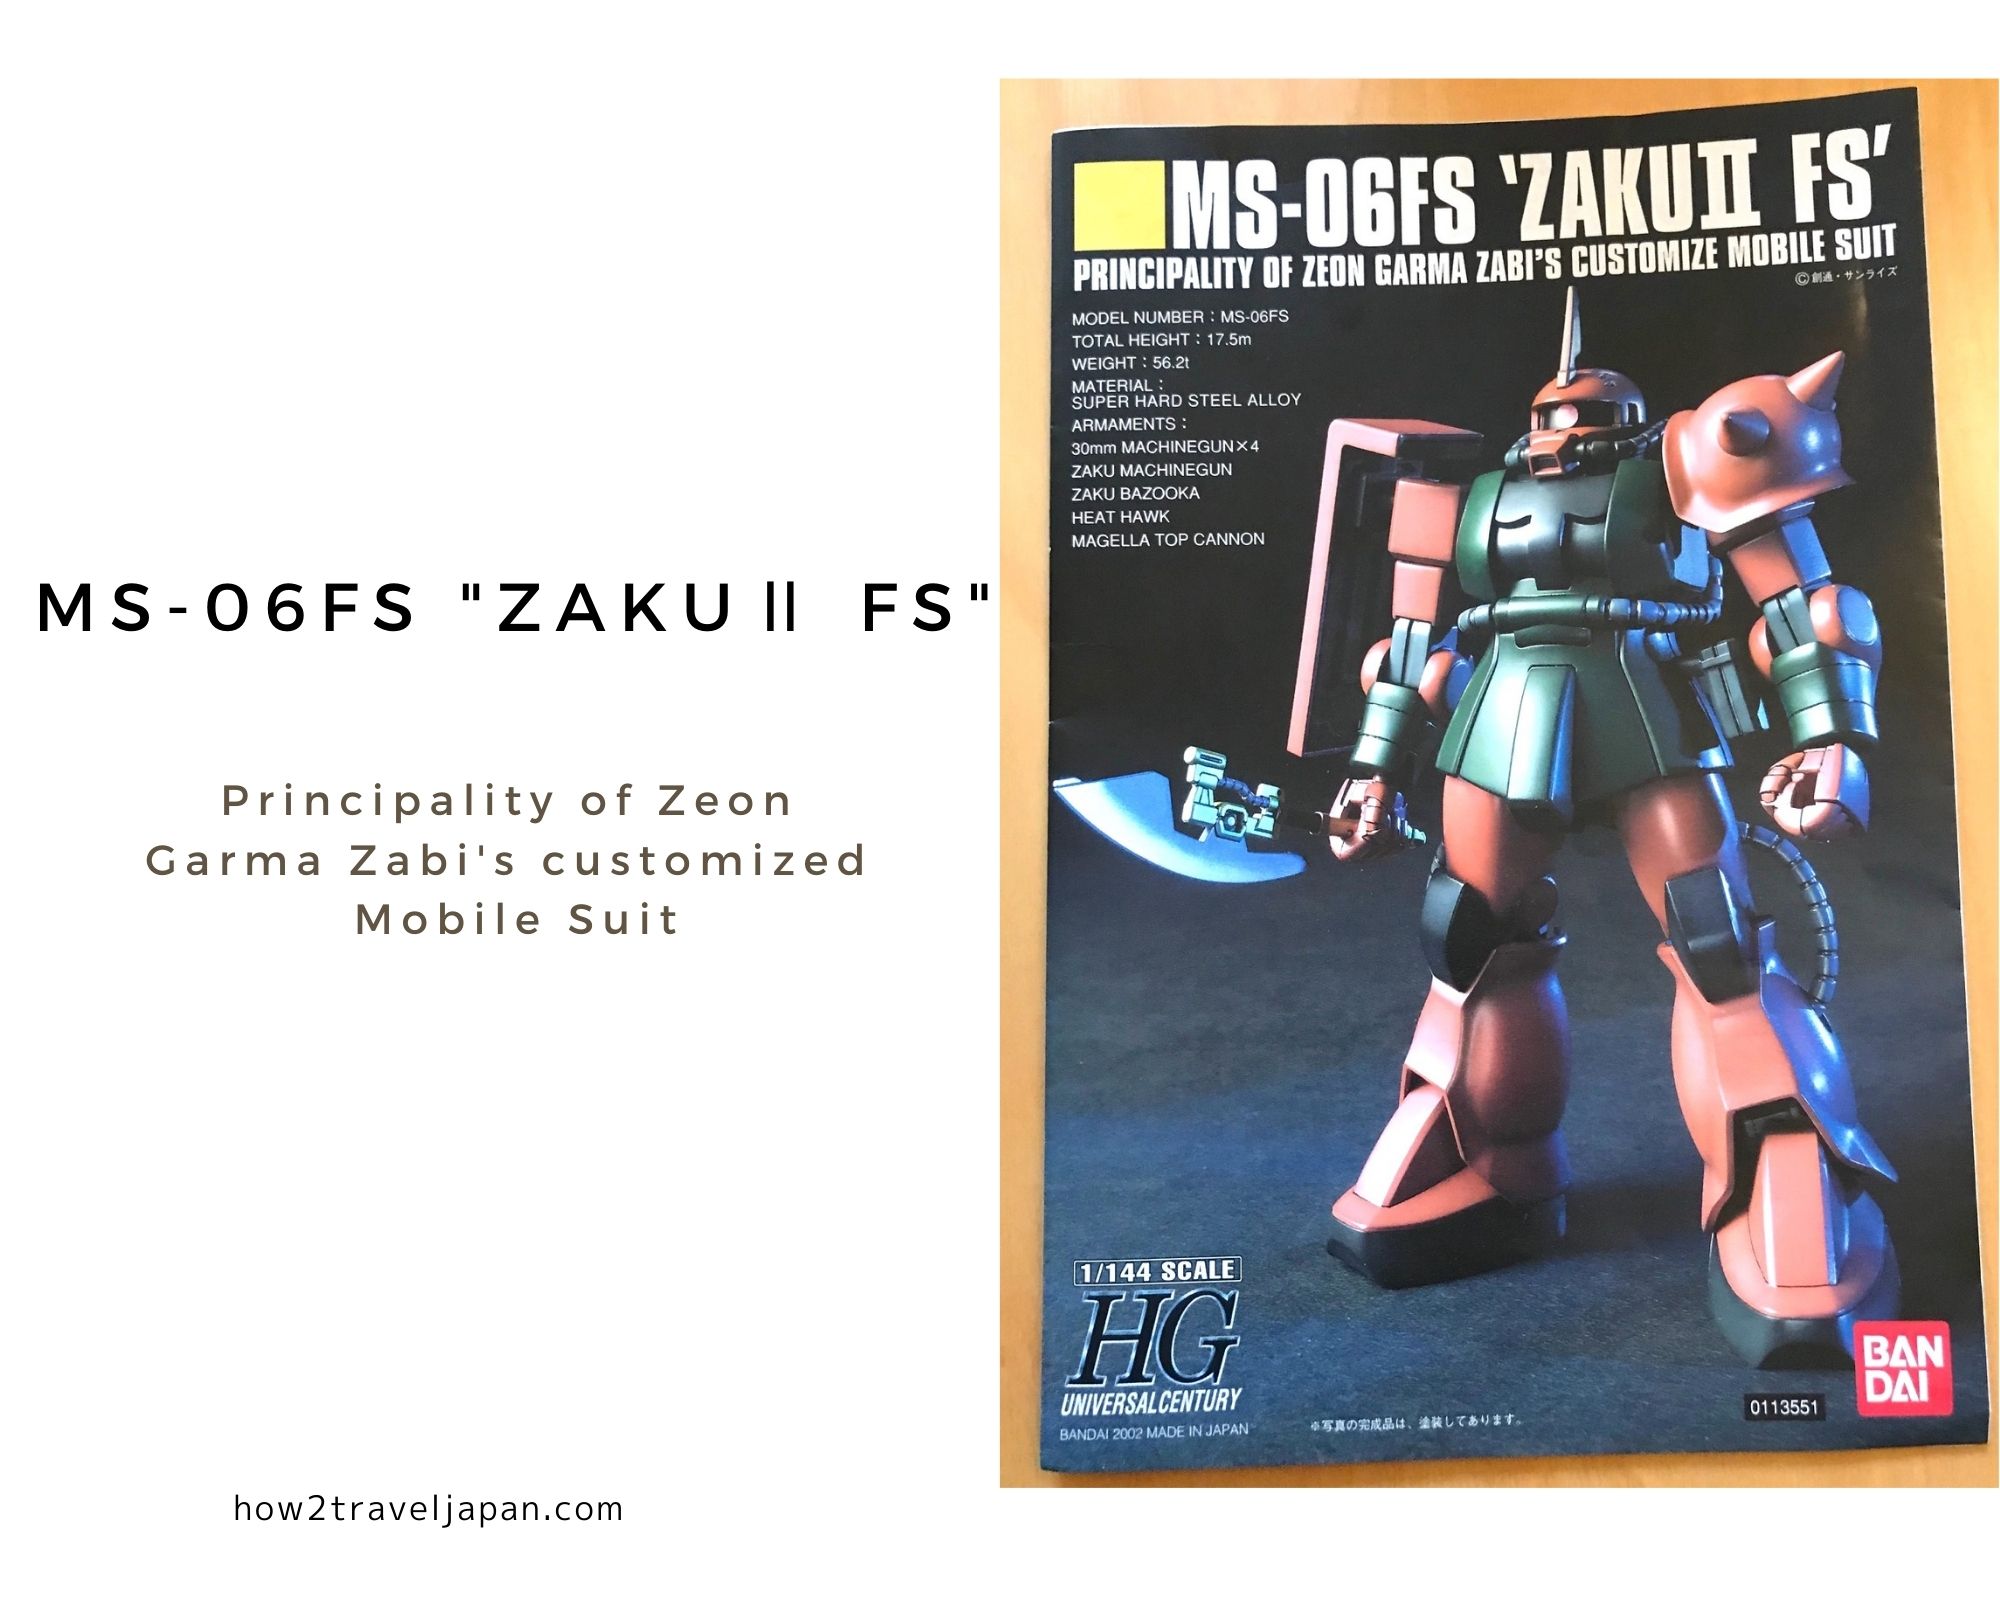 You are currently viewing MS-06FS ZAKUⅡ FS, a Zaku customized for Garma Zabi?